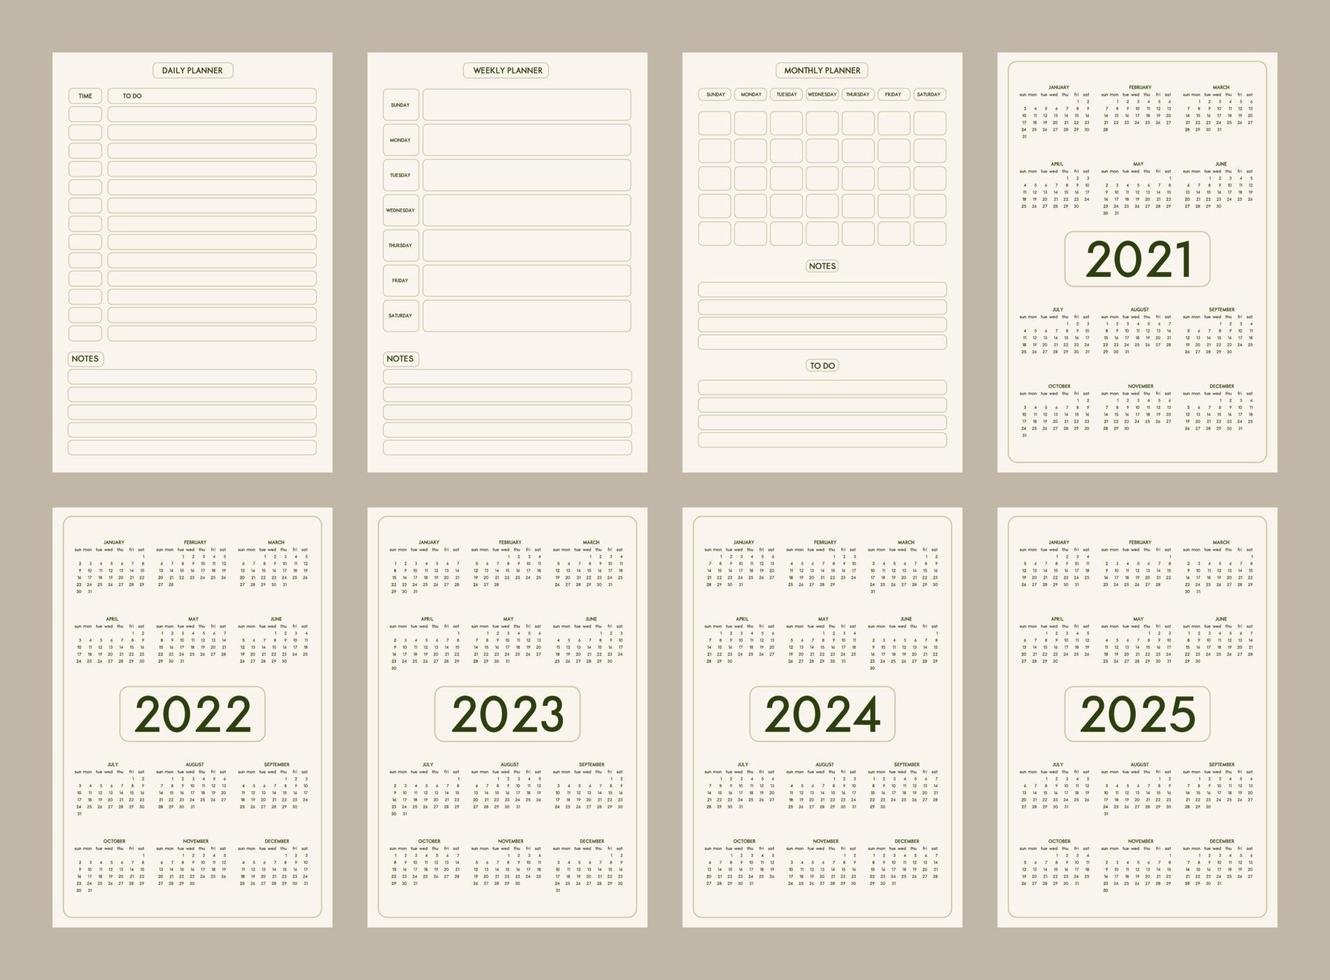 2022 2023 2024 2025 calendario diario semanal mensual planificador personal plantilla de diario estilo minimalista moderno, paleta de colores naturales oliva beige pastel. la semana comienza el domingo vector